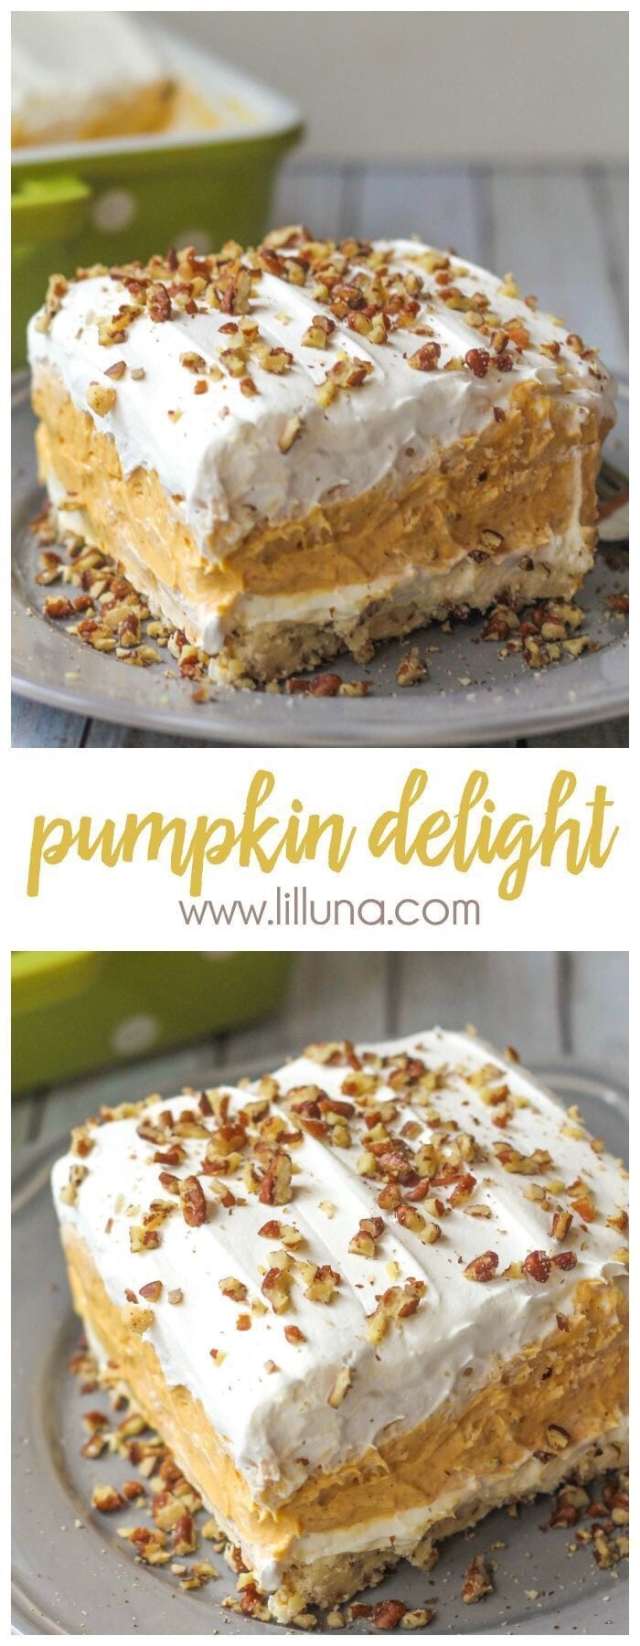 Pumpkin Spice Recipes: Pumpkin Delight